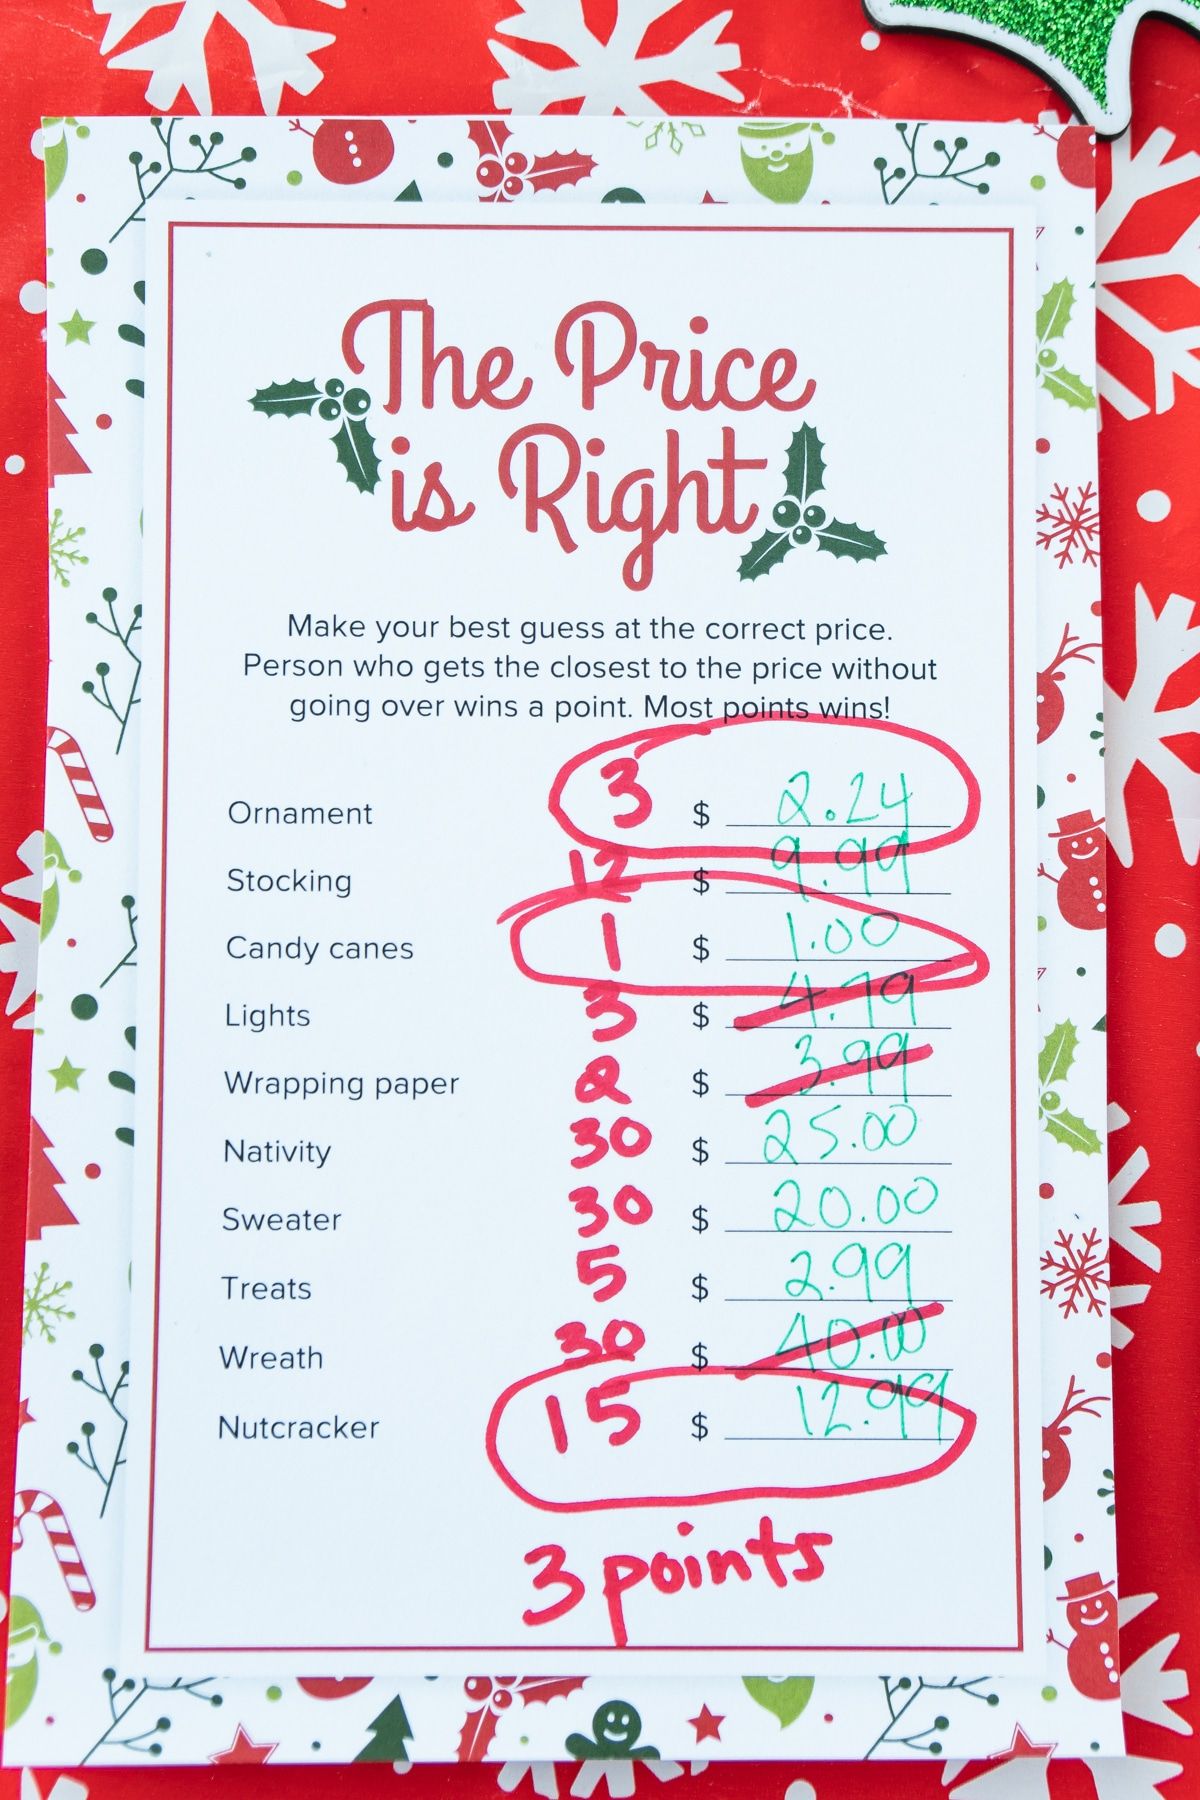 O preço do Natal é o jogo certo com as perguntas circuladas